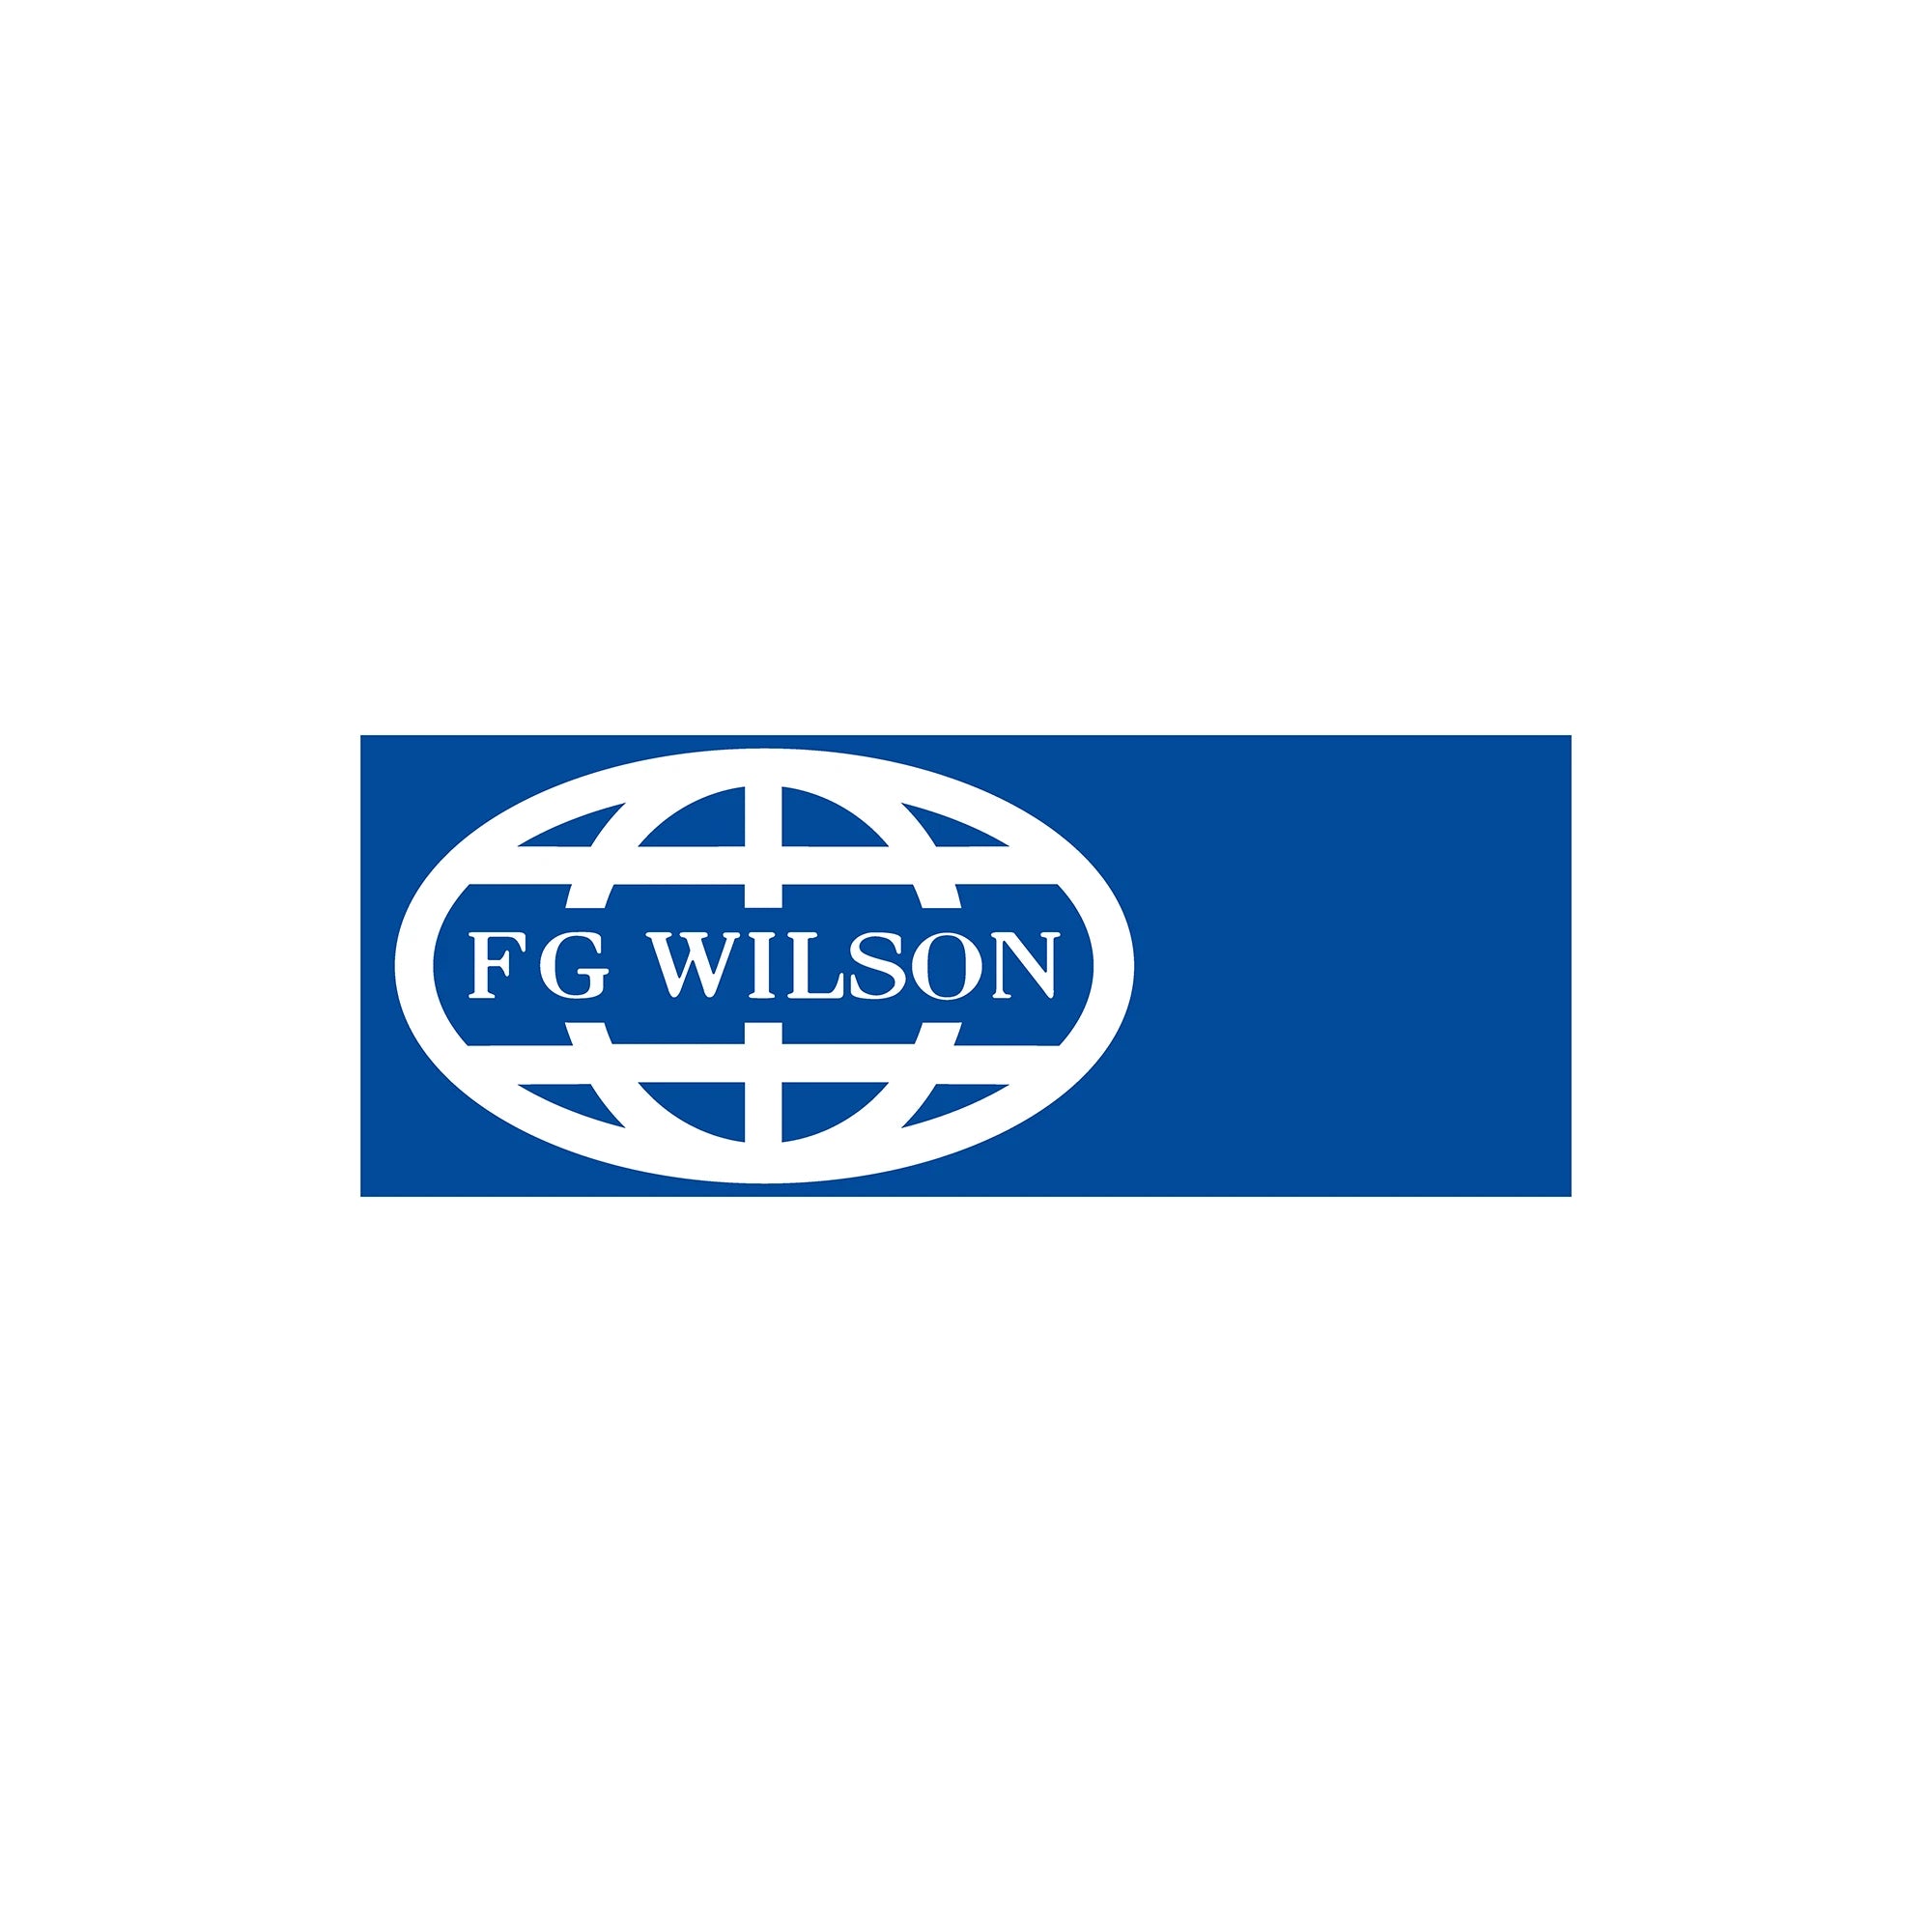 FG Wilson Parts - Mitchell Webshop